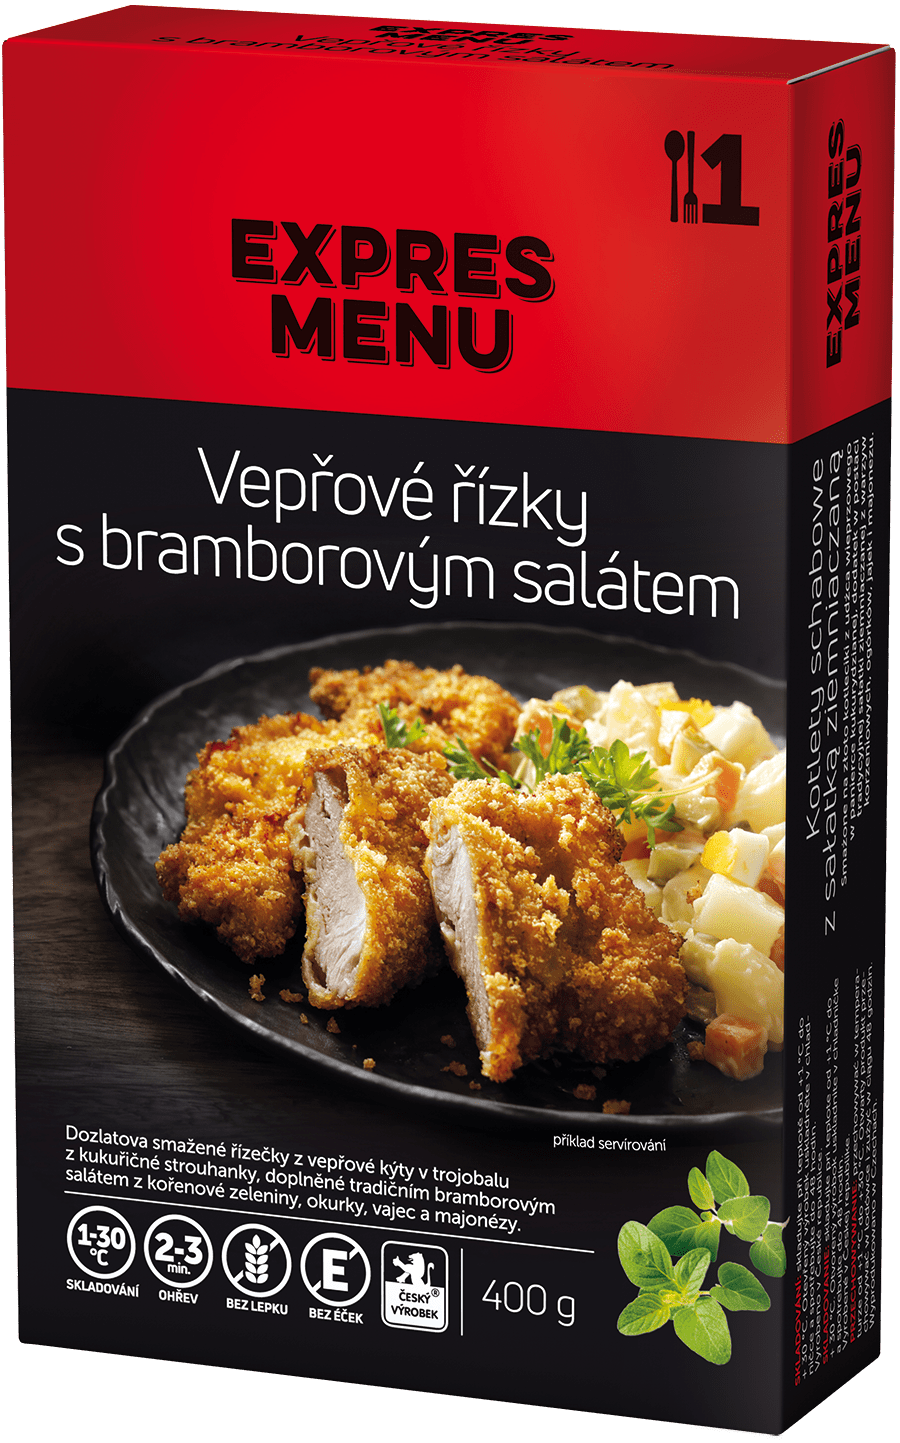 KM Vepřové řízky s bramborovým salátem